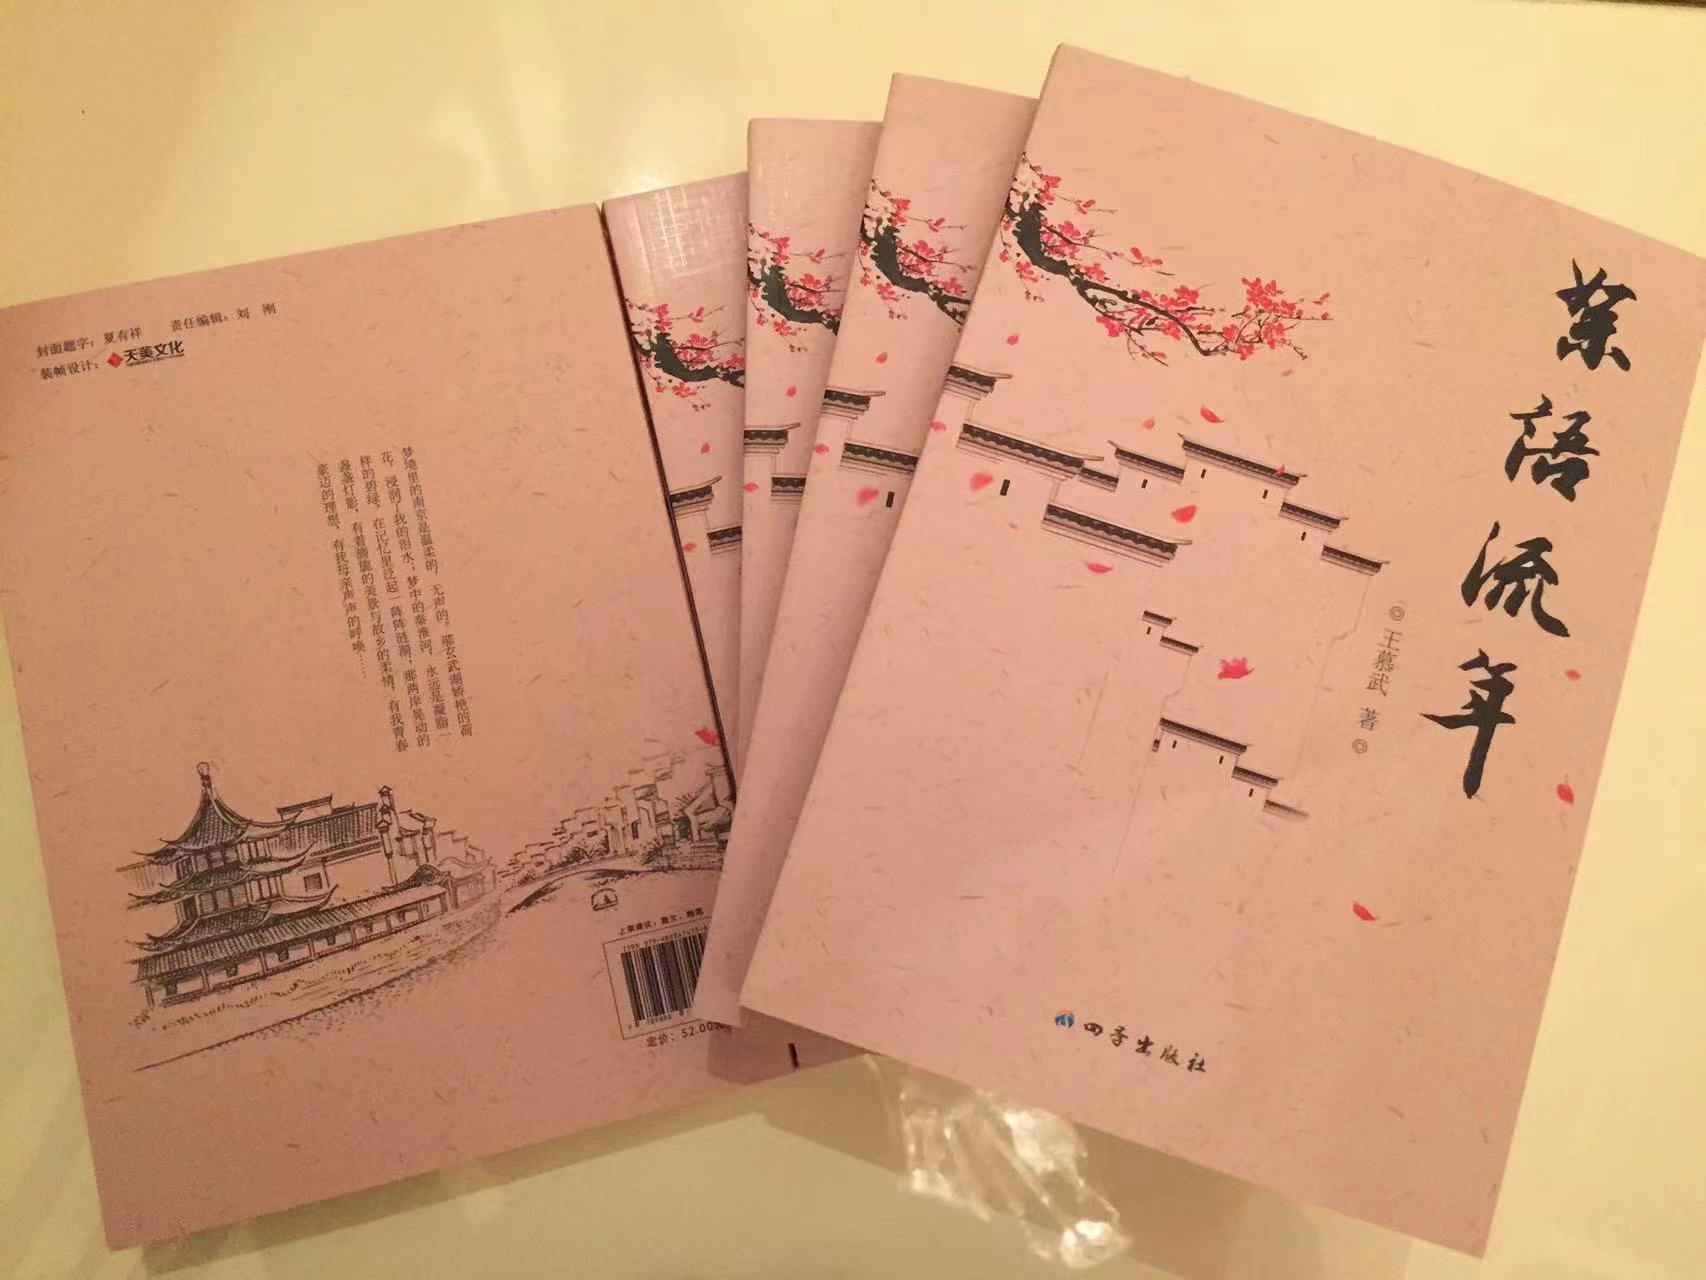 美文分享|一幅史诗般的悲情画卷  ——读王慕武自传《絮语流年》